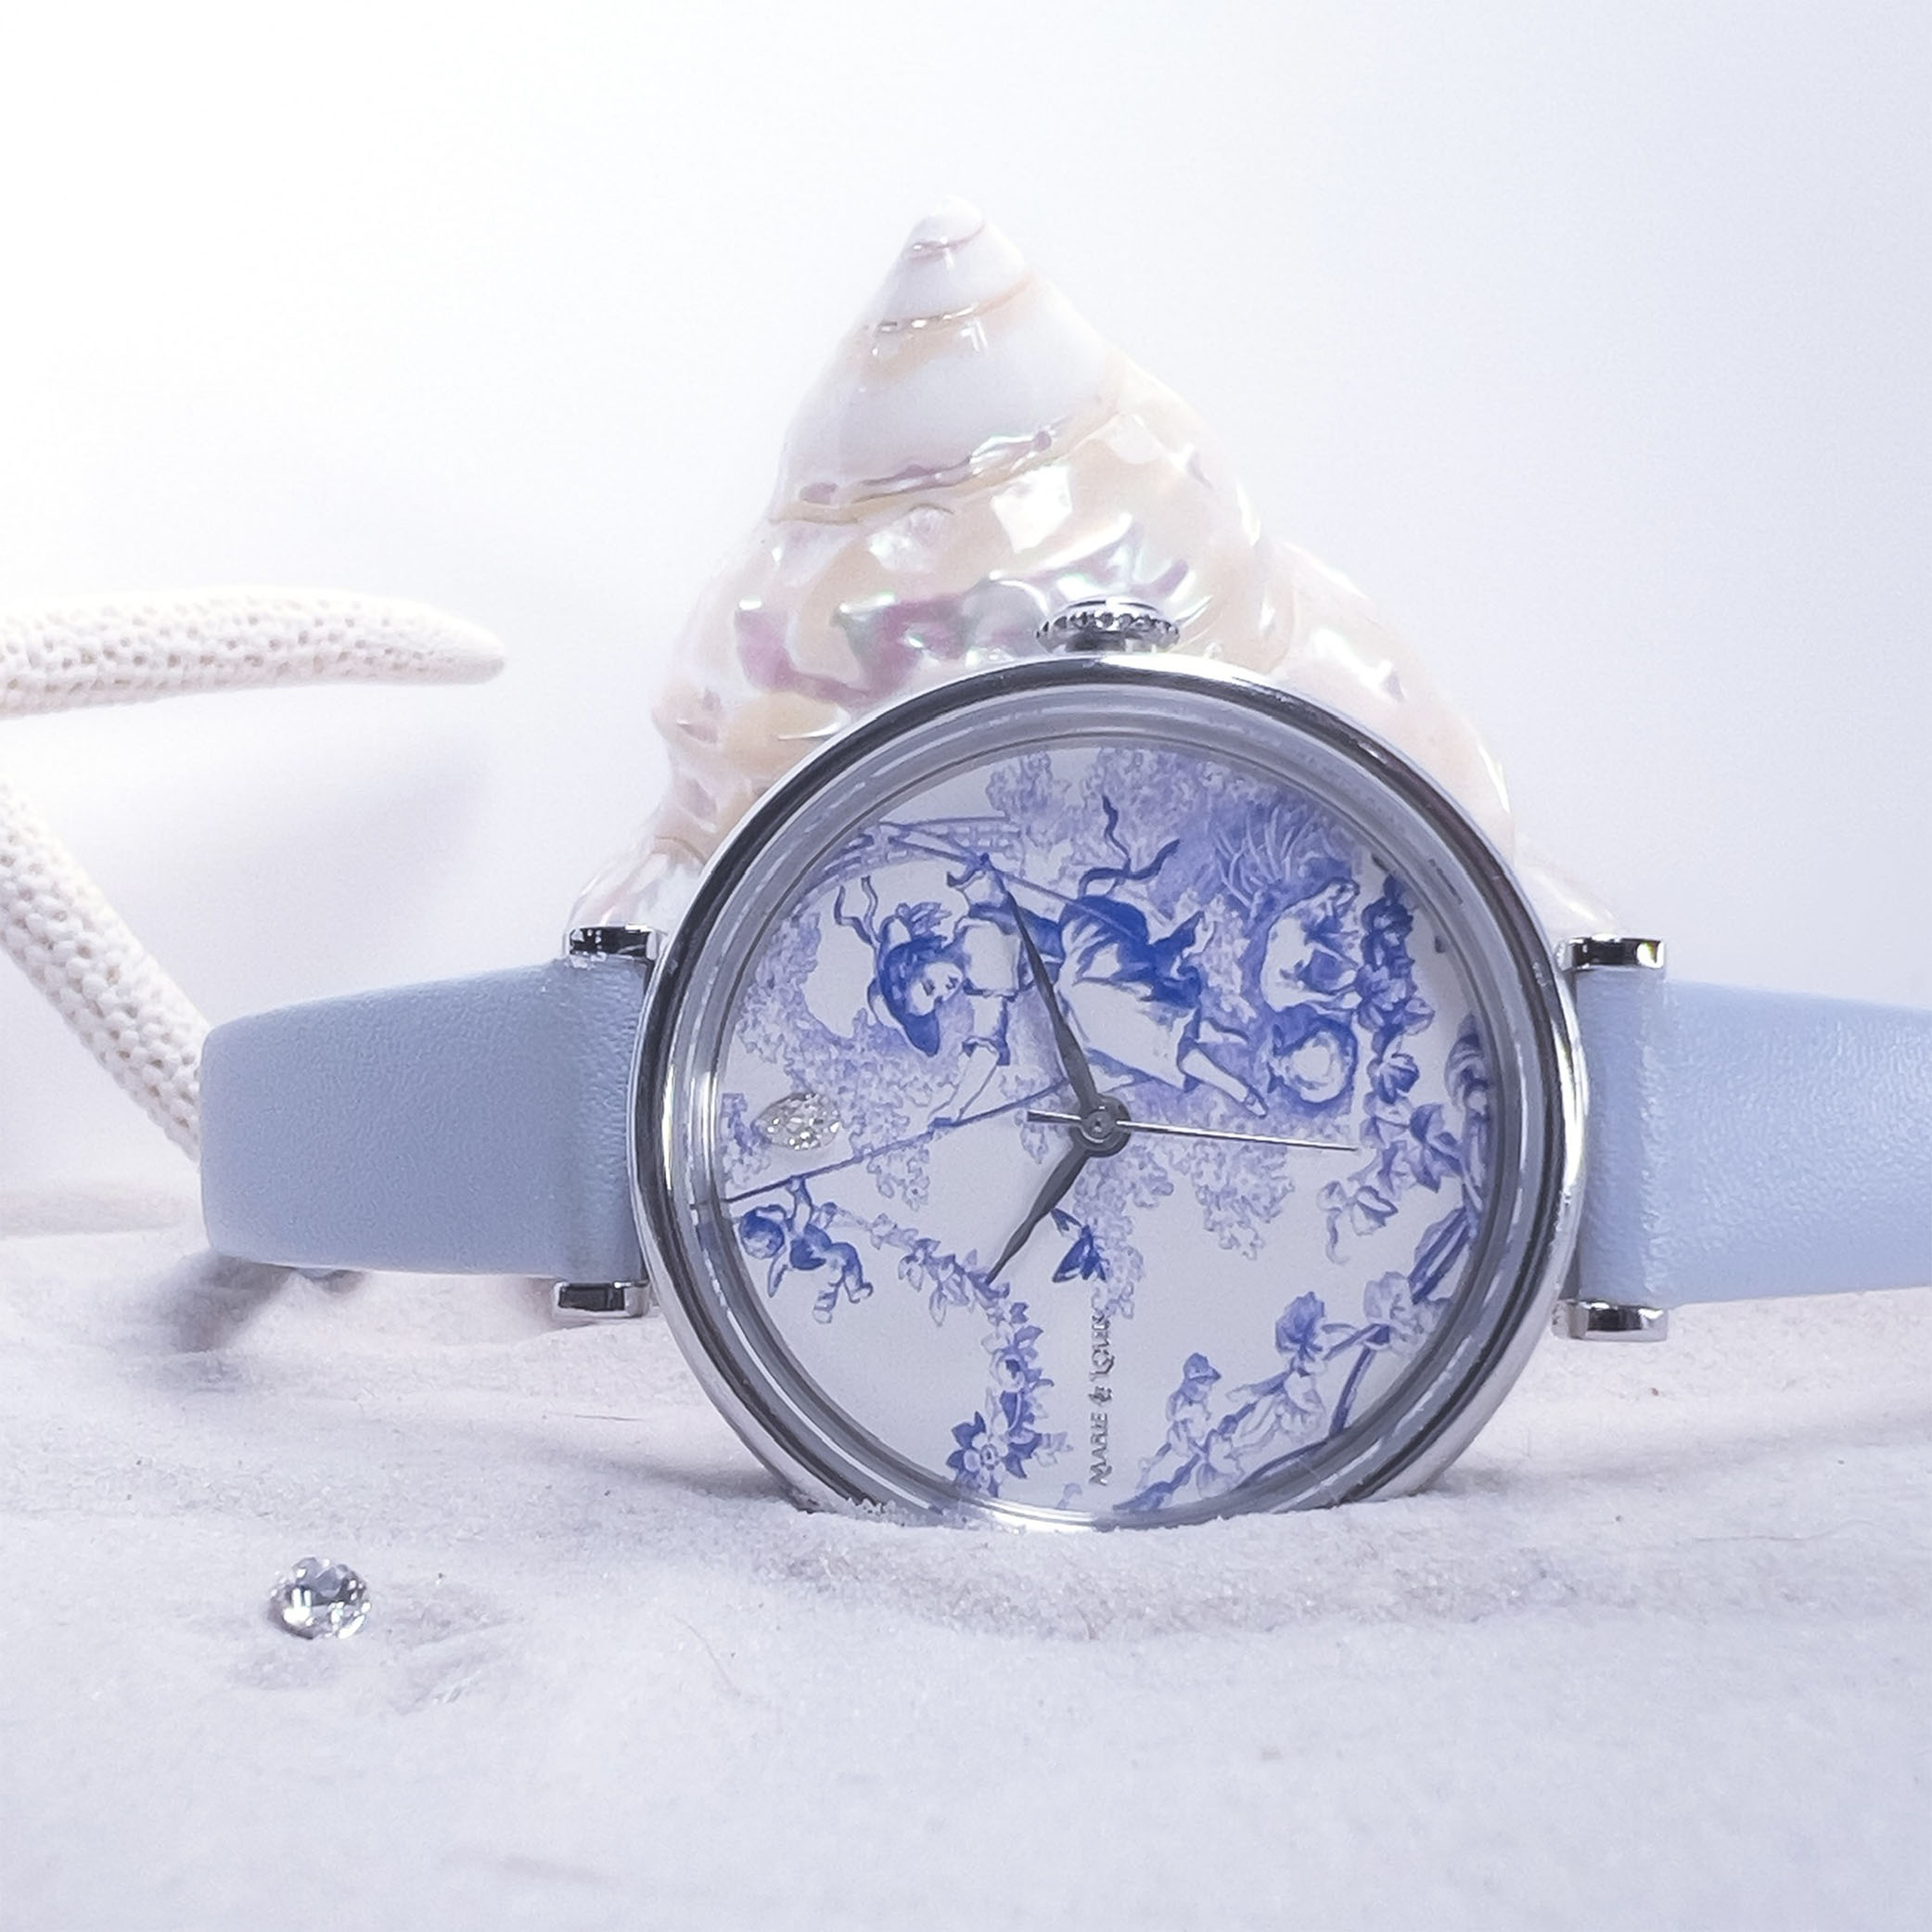 Marie & Louis : des montres exclusives à l’élégance intemporelle